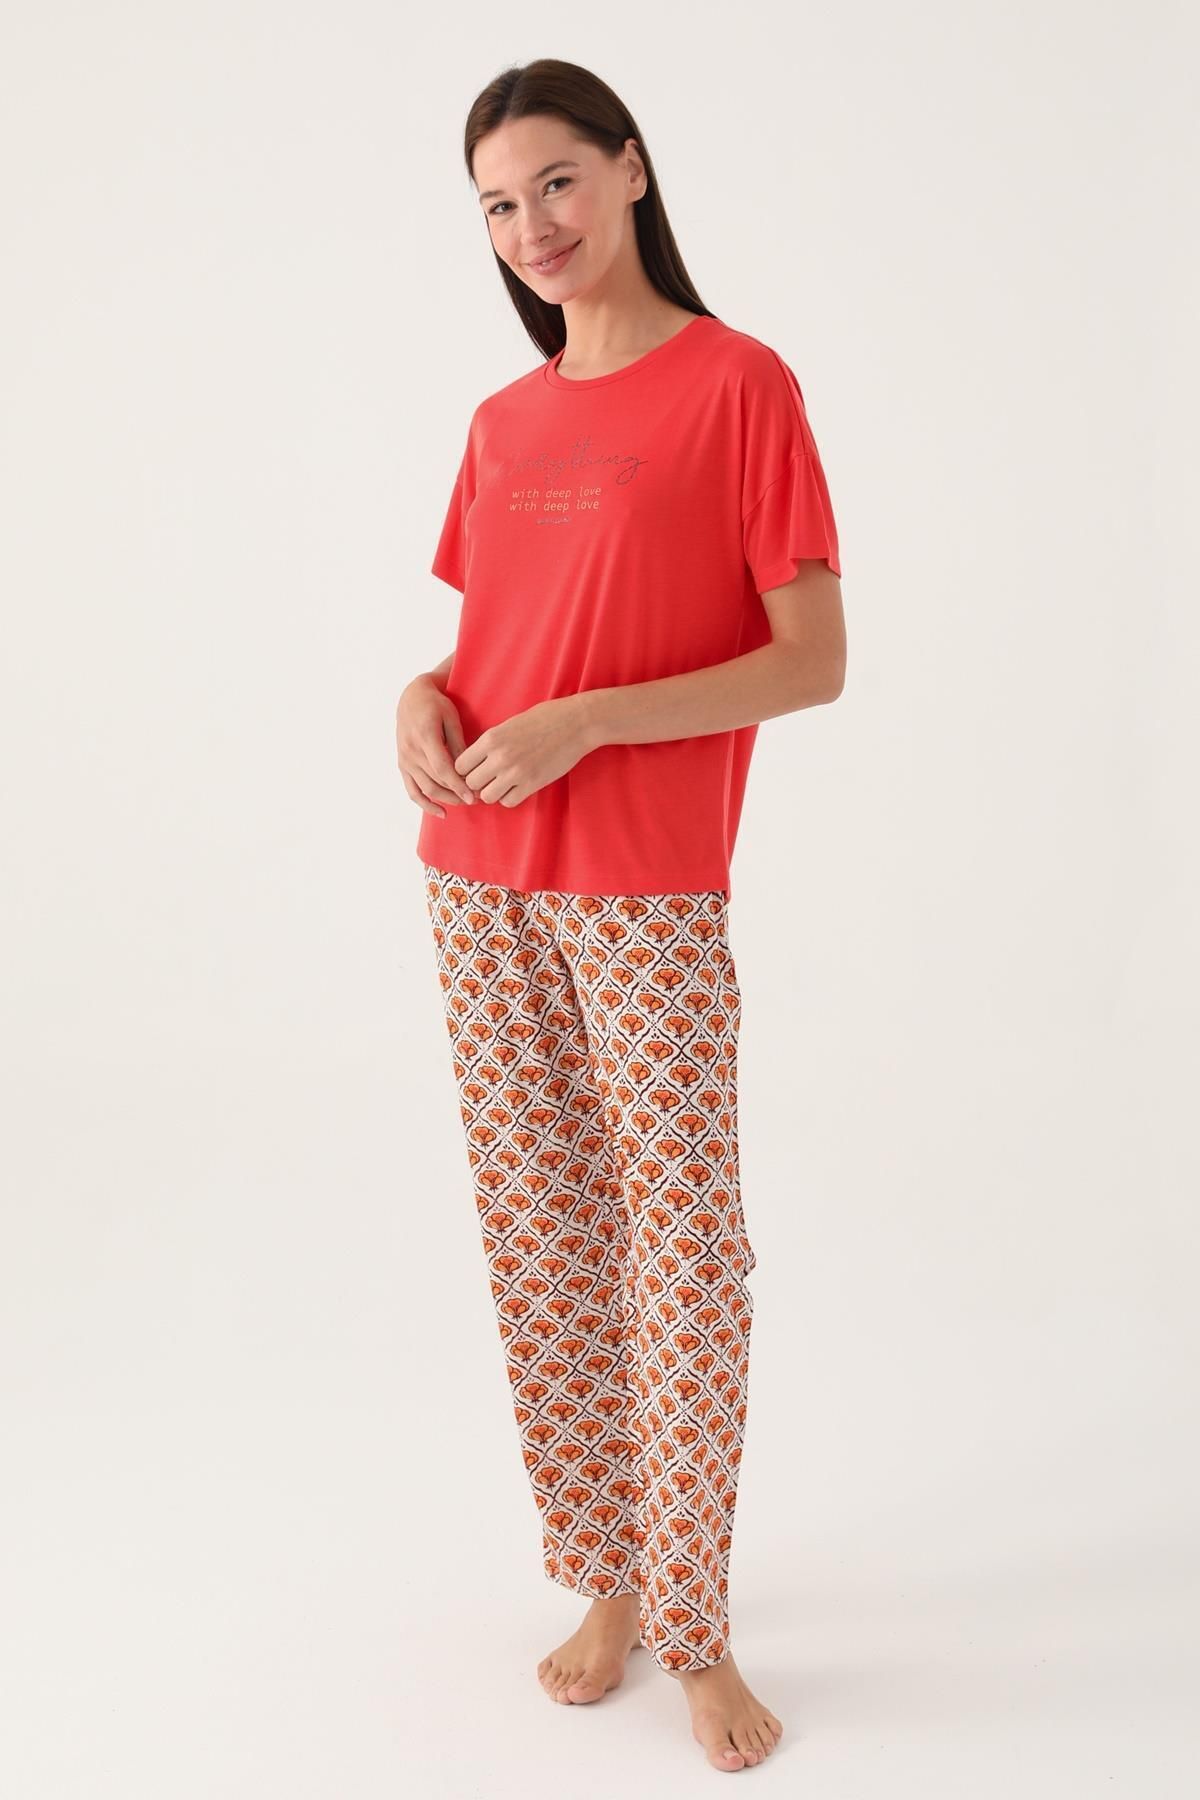 Pierre Cardin Desenli Yazlık Kadın Pijama Takımı,